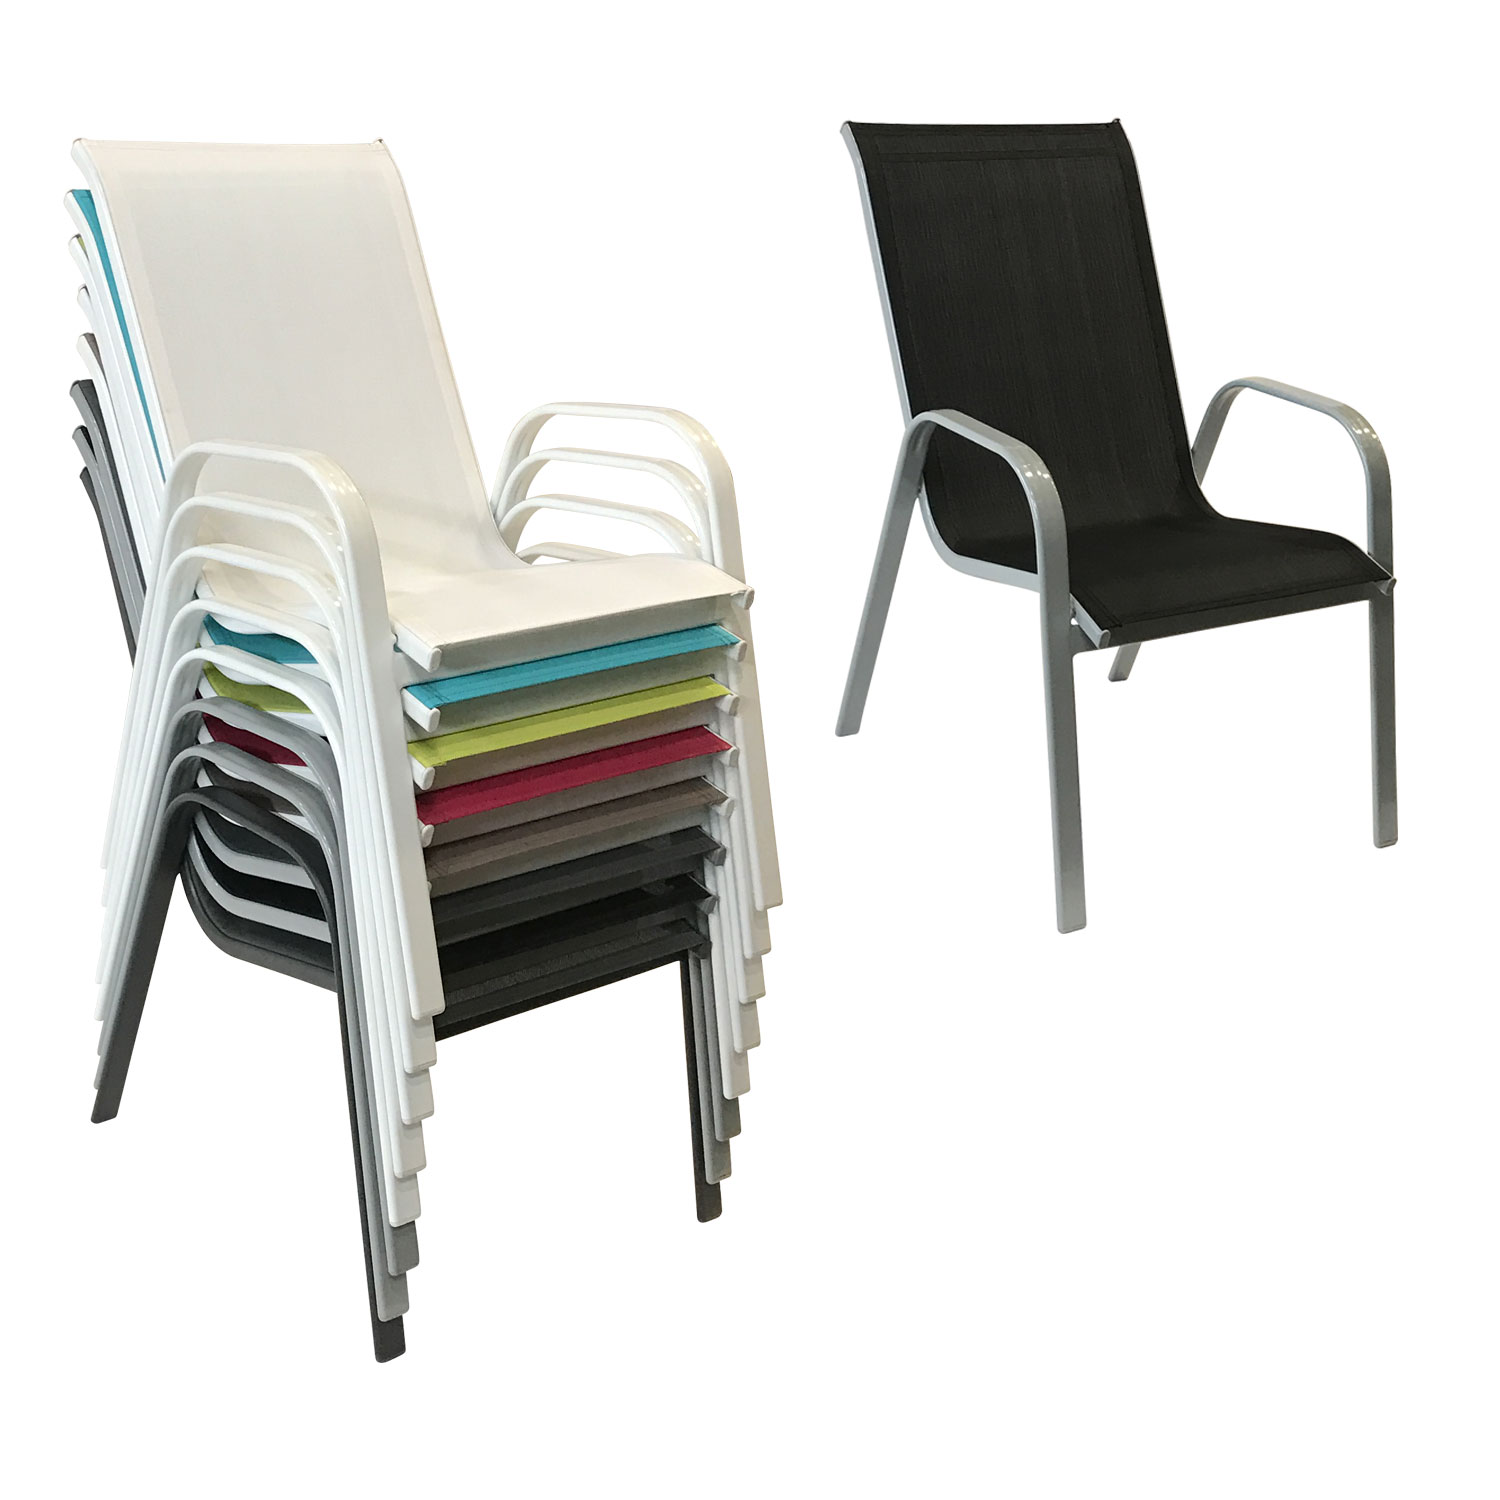 Lote de 4 sillas MARBELLA en textileno negro - aluminio gris